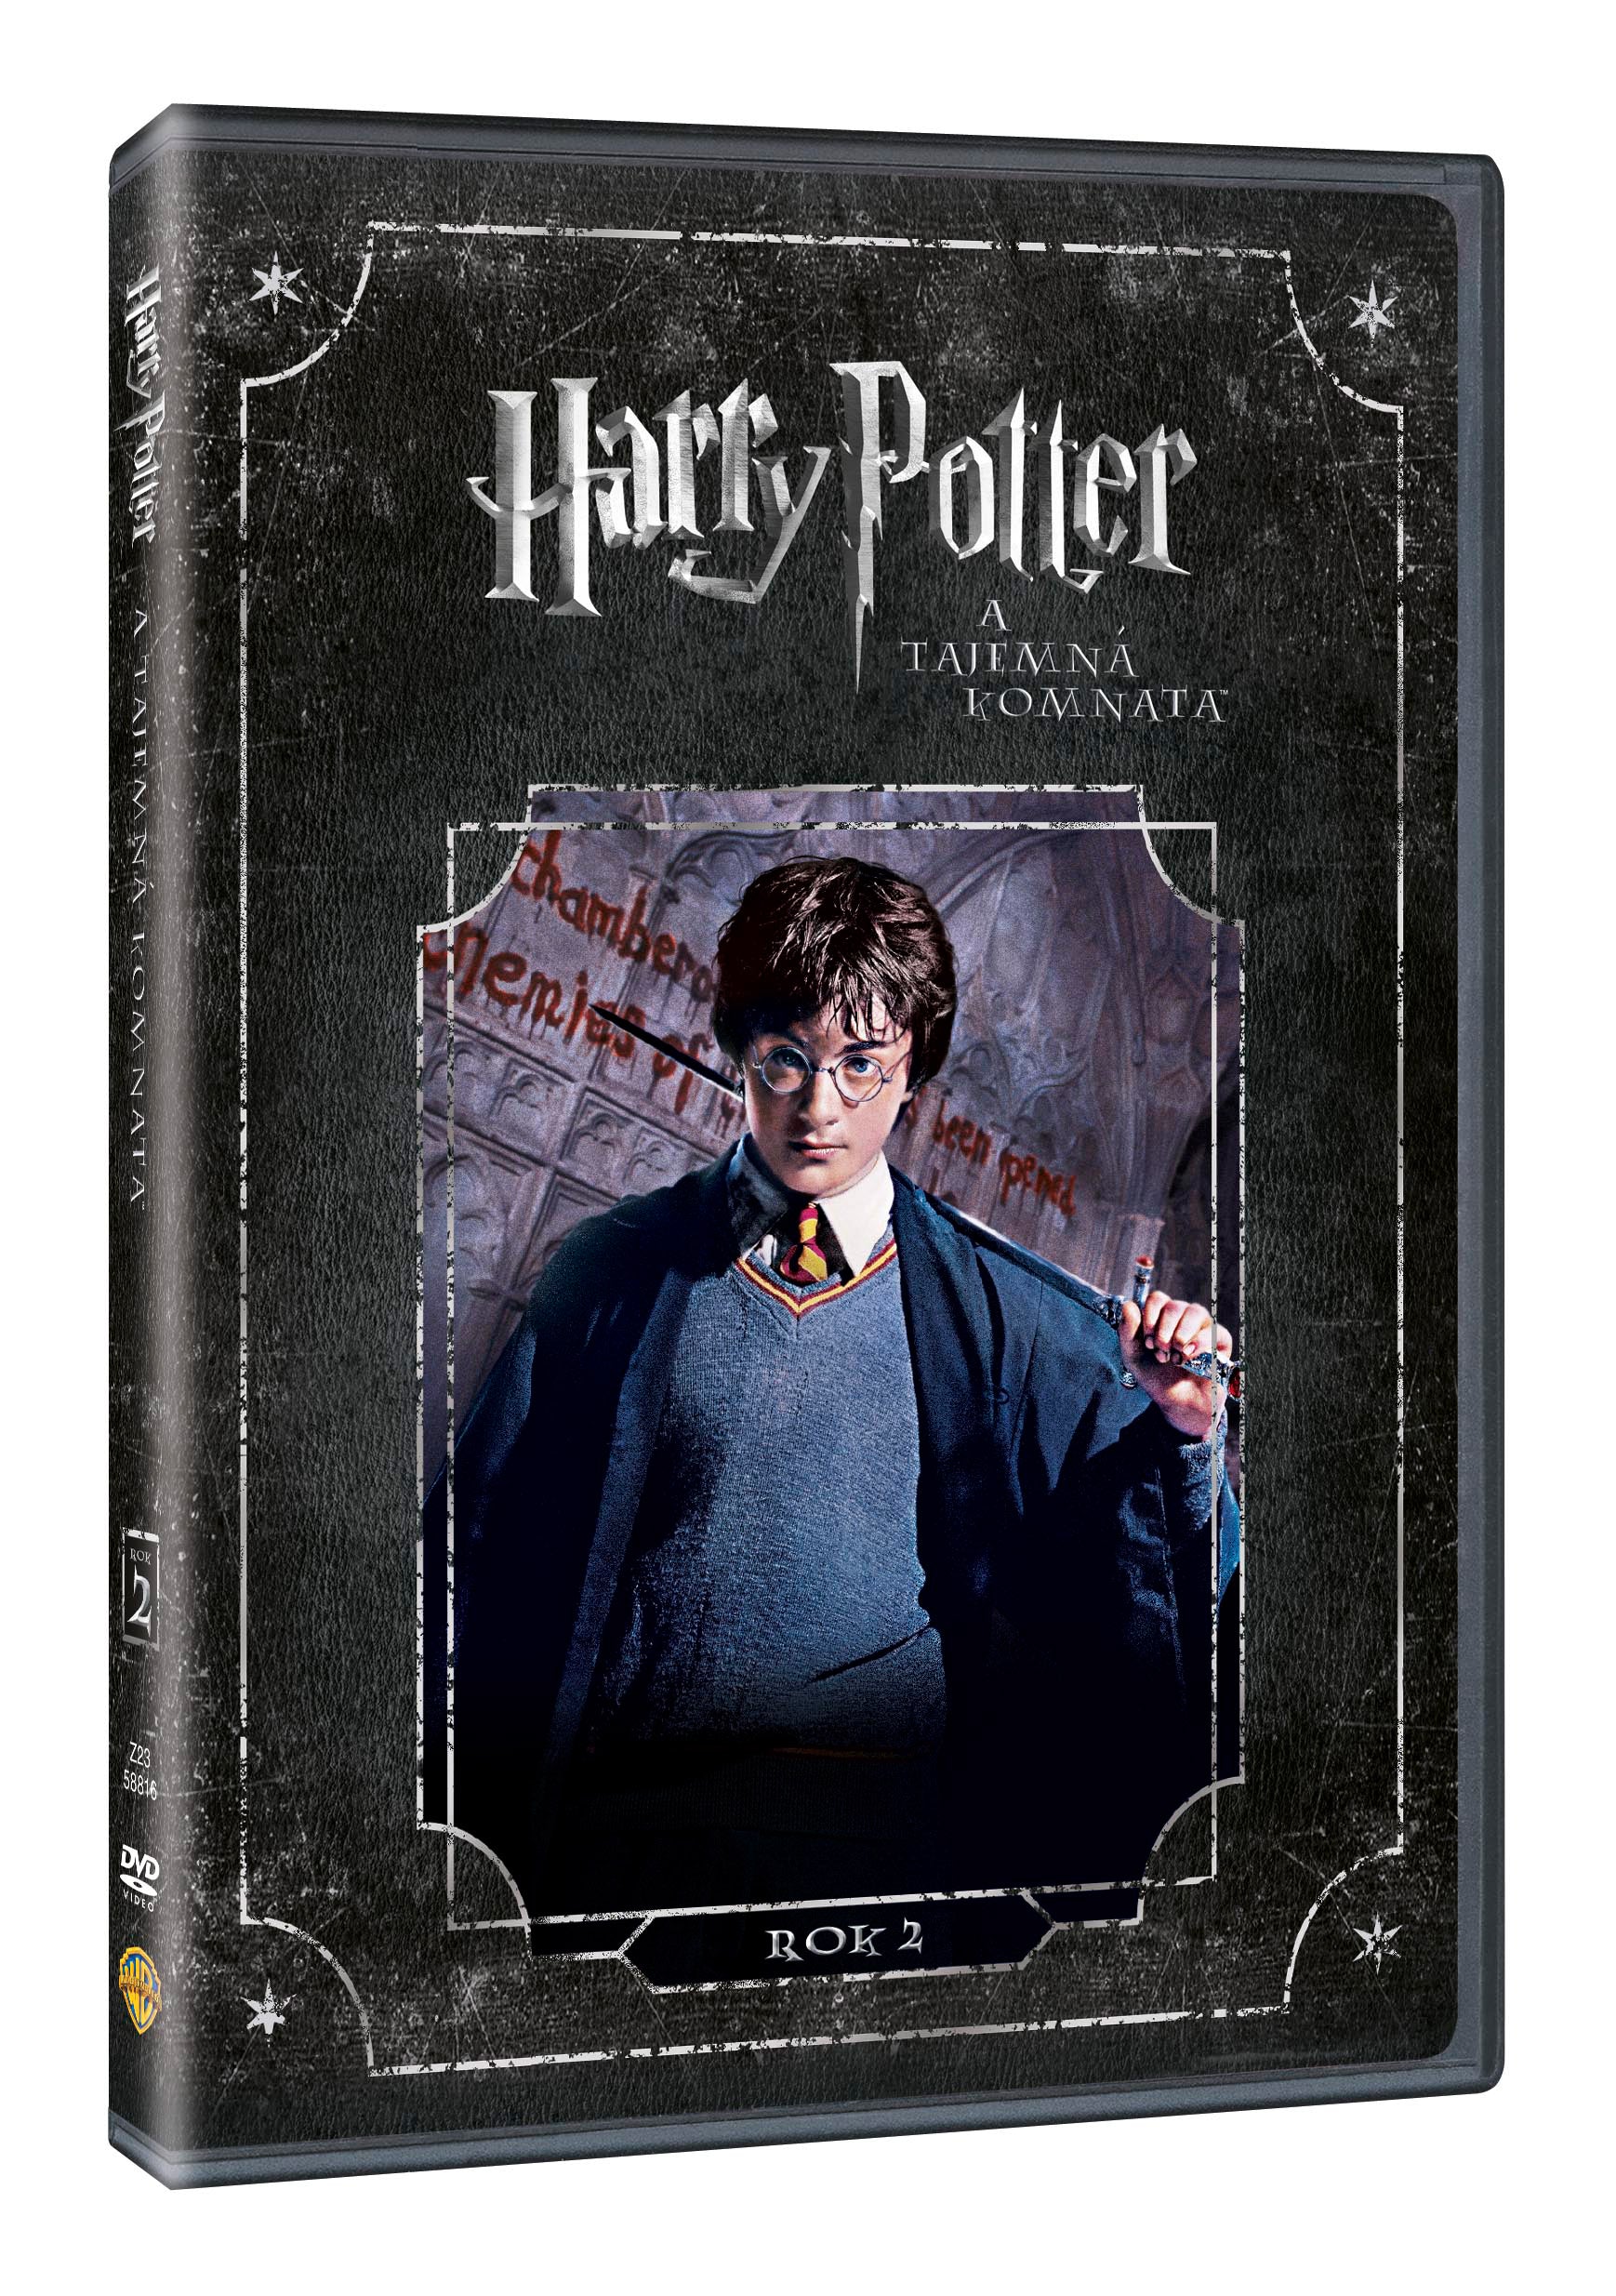 Harry Potter und Tajemna komnata DVD / Harry Potter und die Kammer des Schreckens